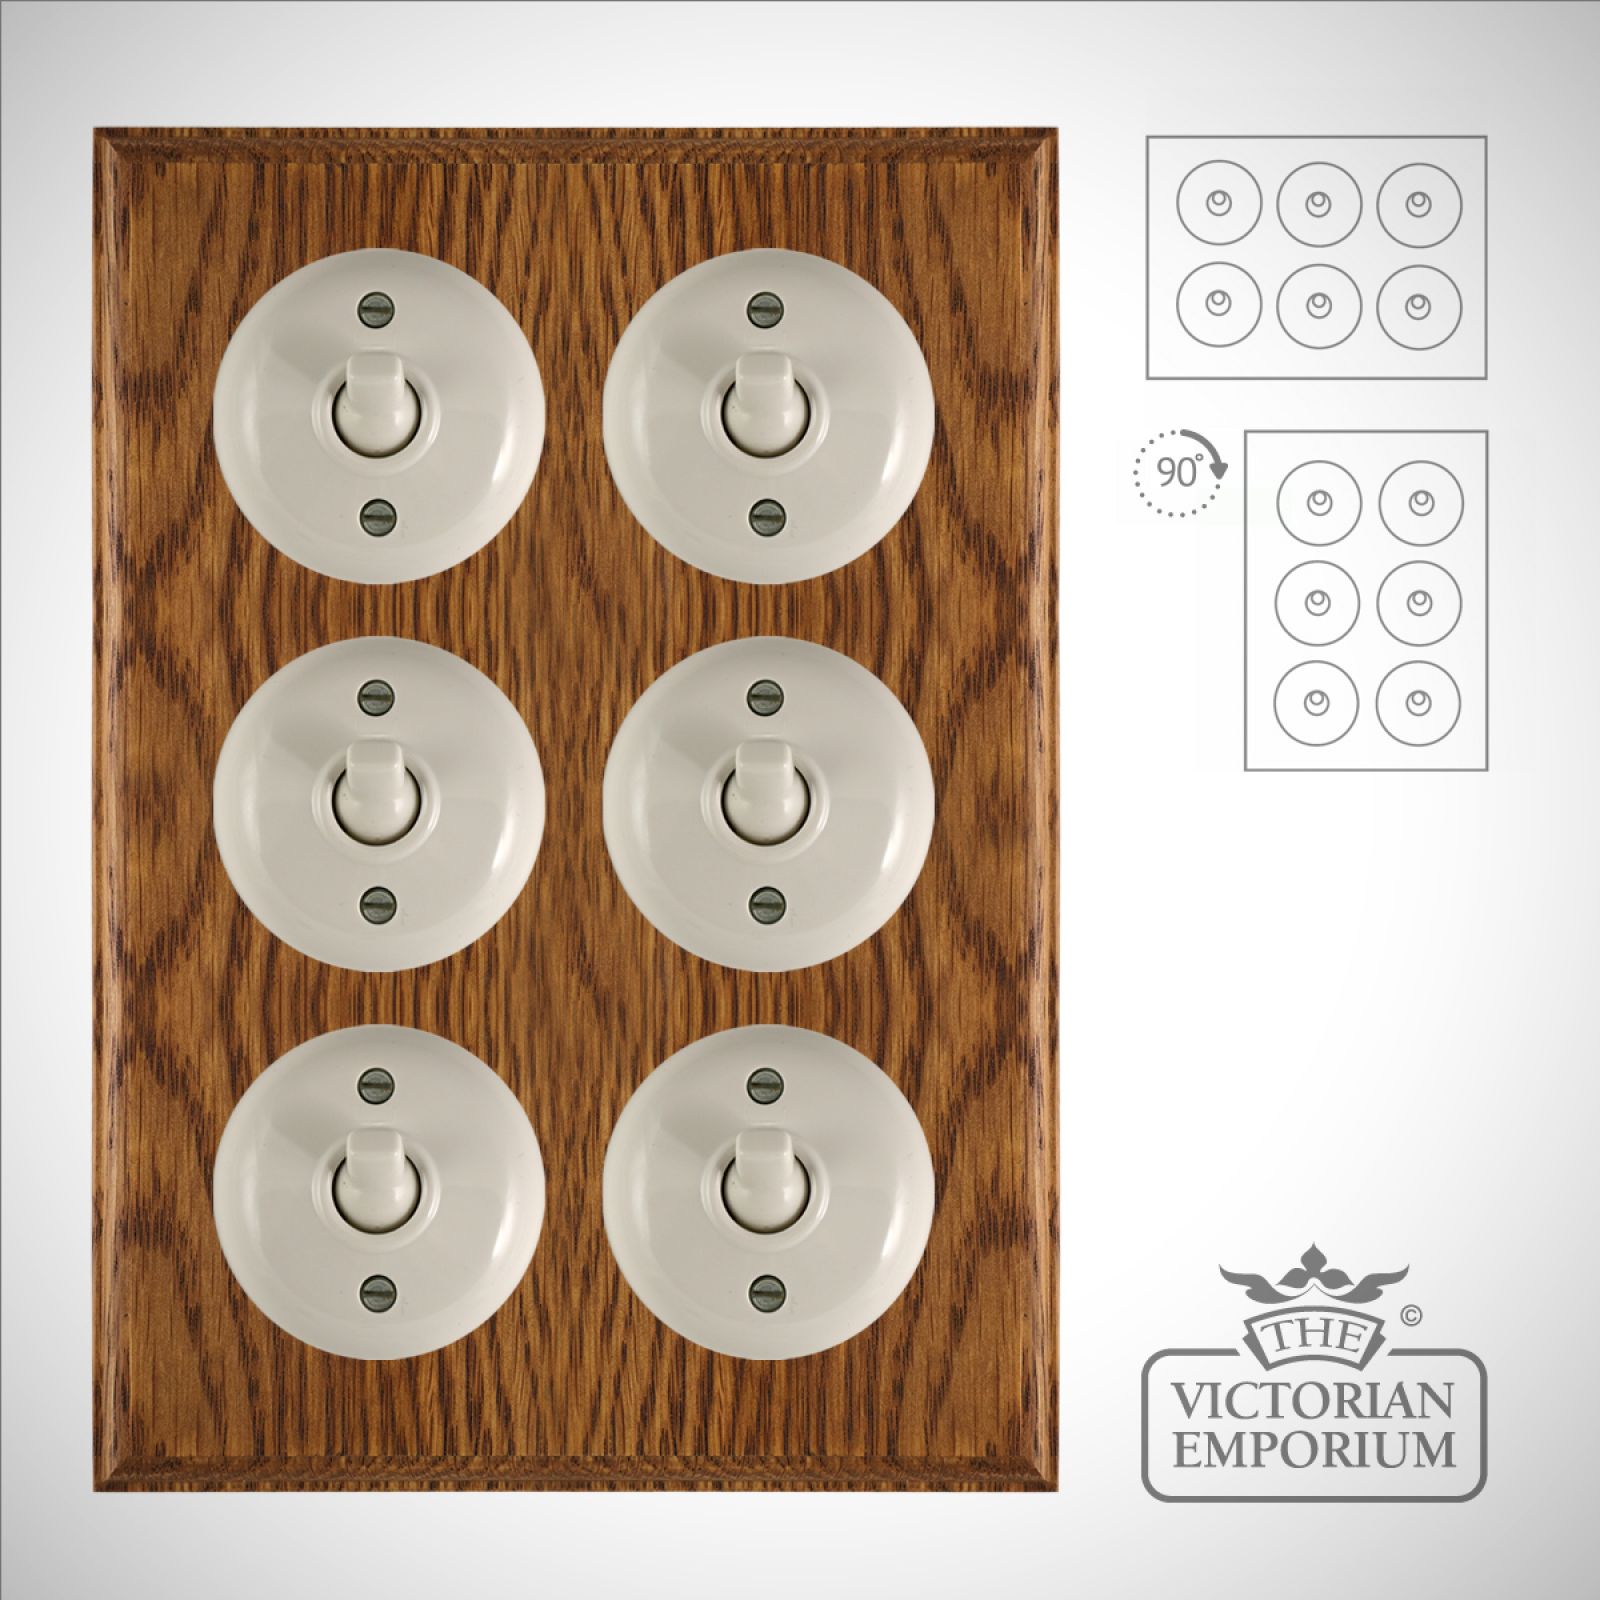 6 gang Bakelite light switch - plain white or brown